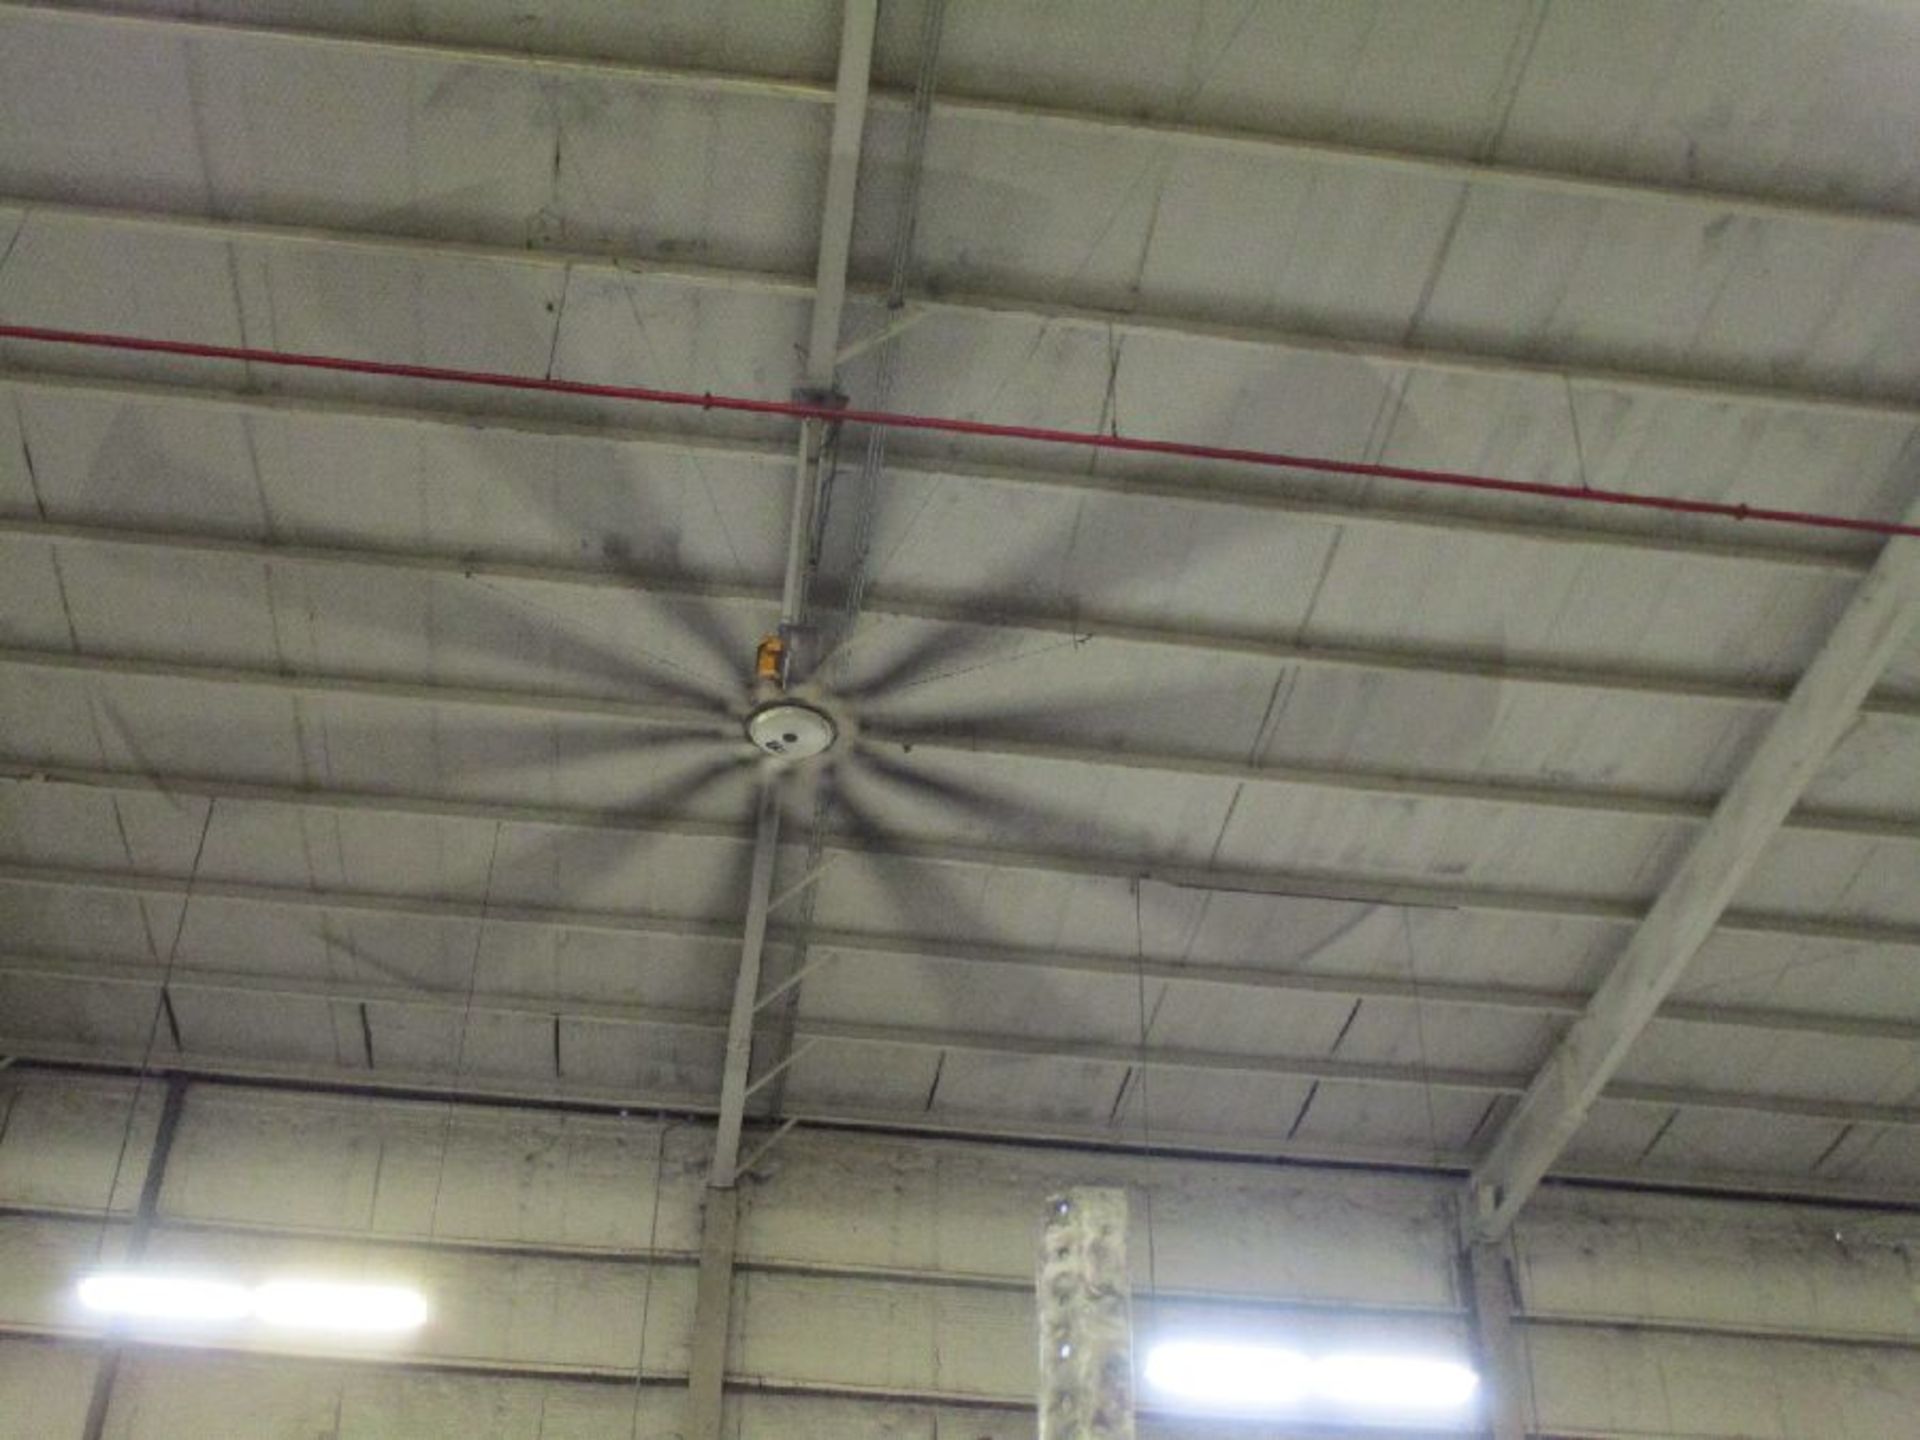 Big Ass Fan Co. 24' Diameter Ceiling Fan